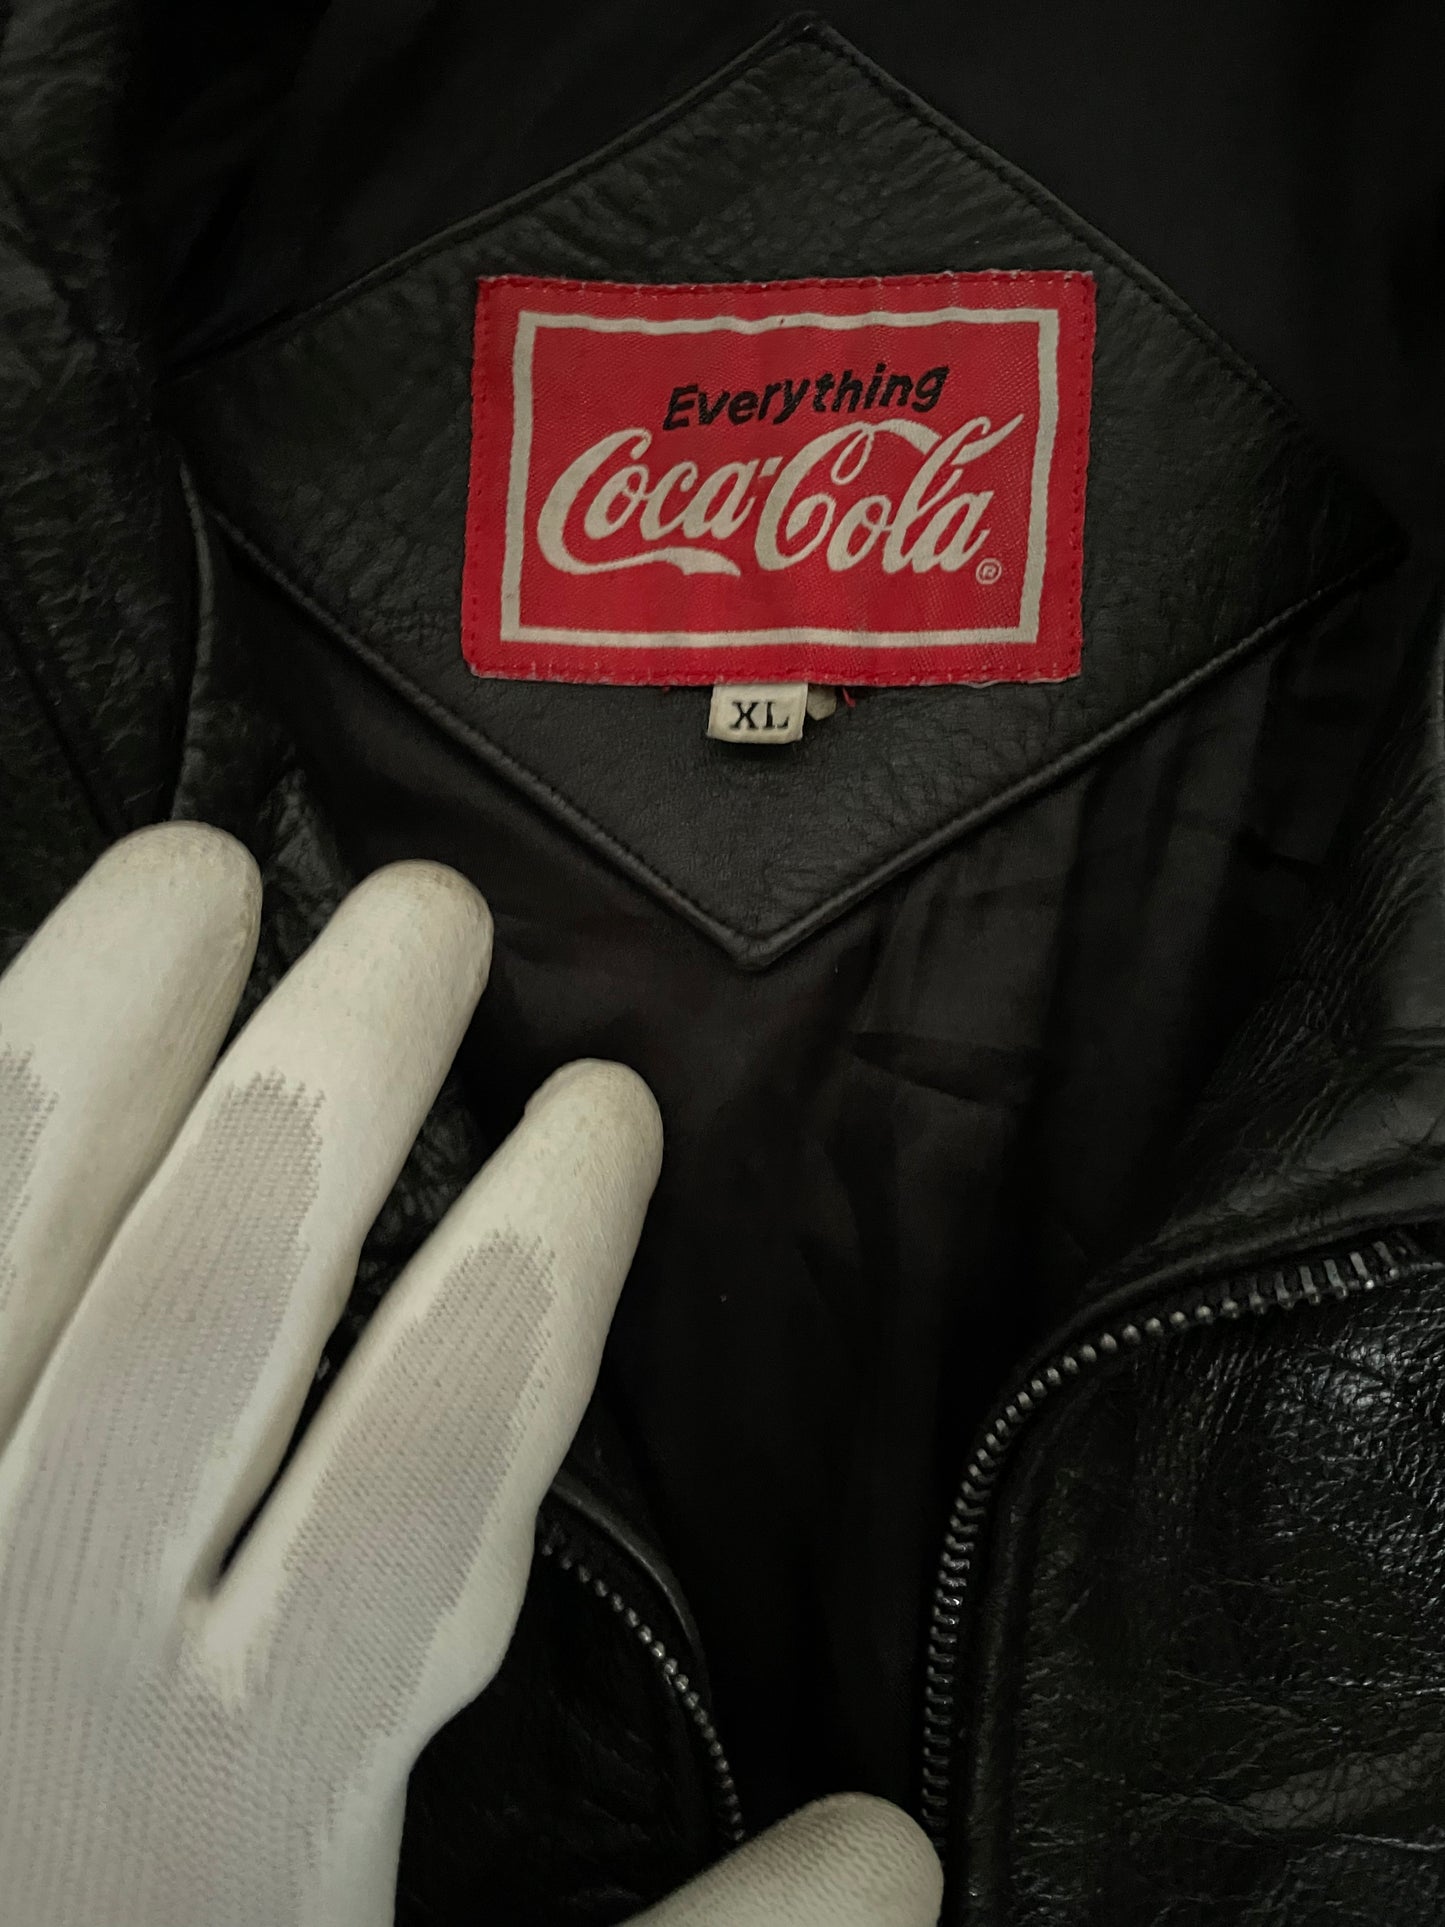 Bomber Jacket en cuero World Of Coca-Cola NewYork de colección edicion 1987